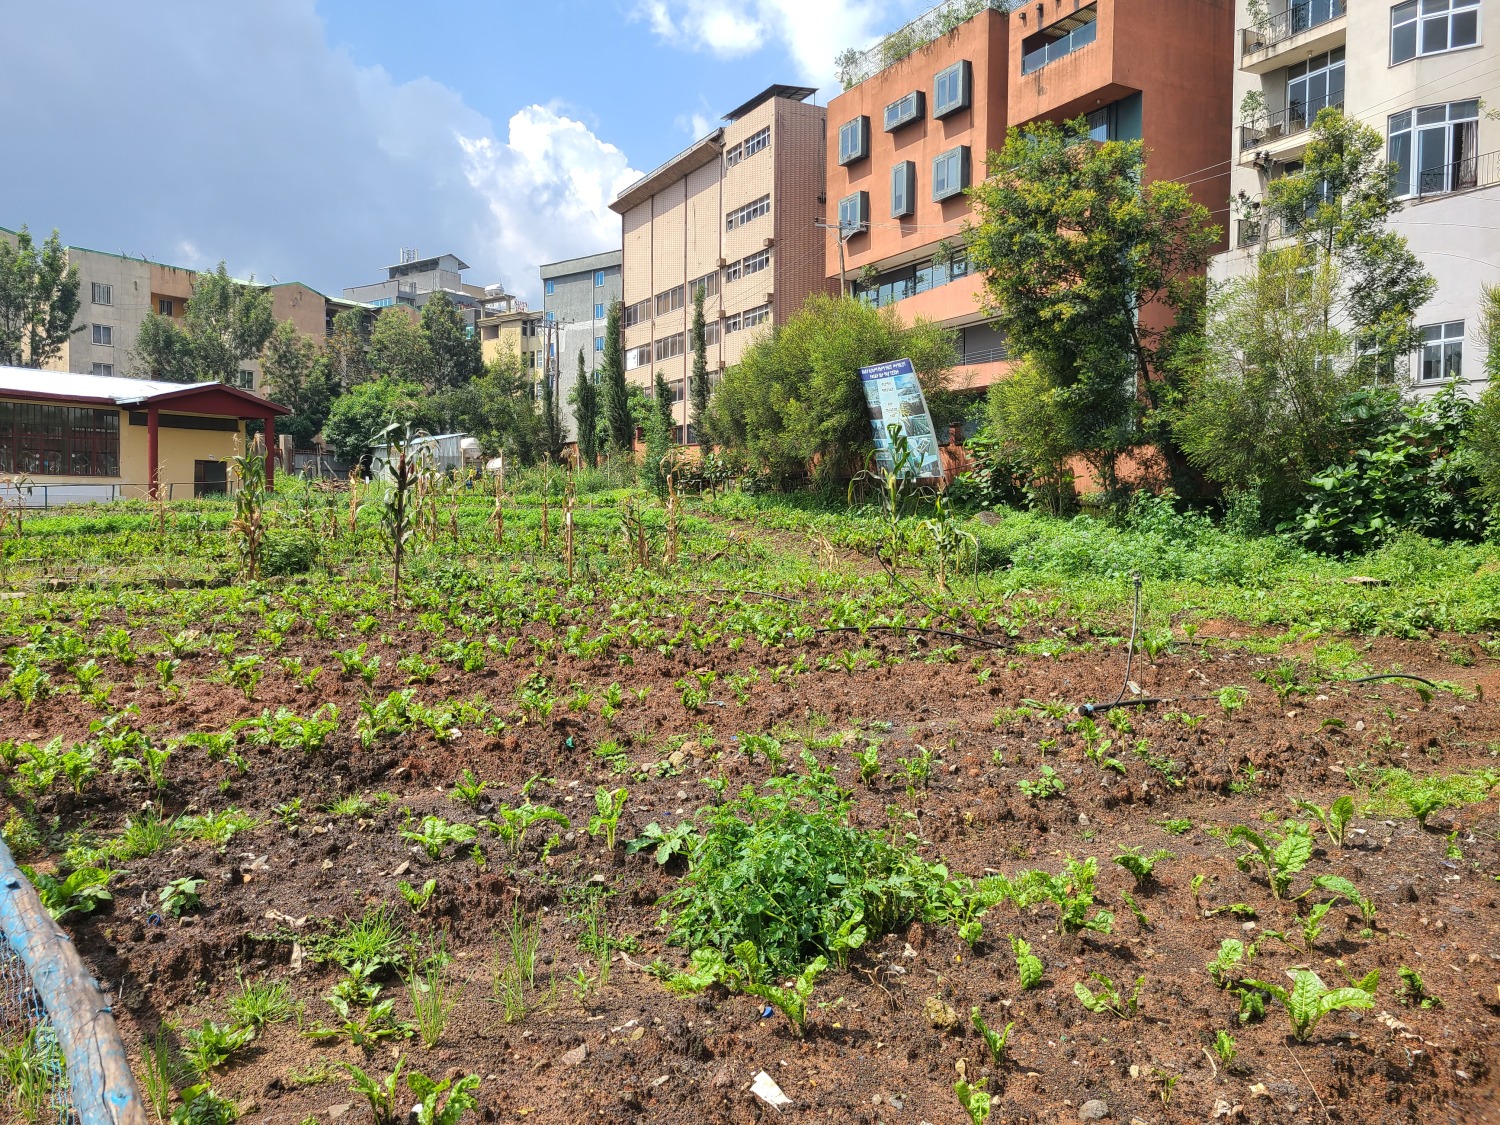 Schulgarten der Grundschule, in dem Obst und Gemüse angebaut werden.